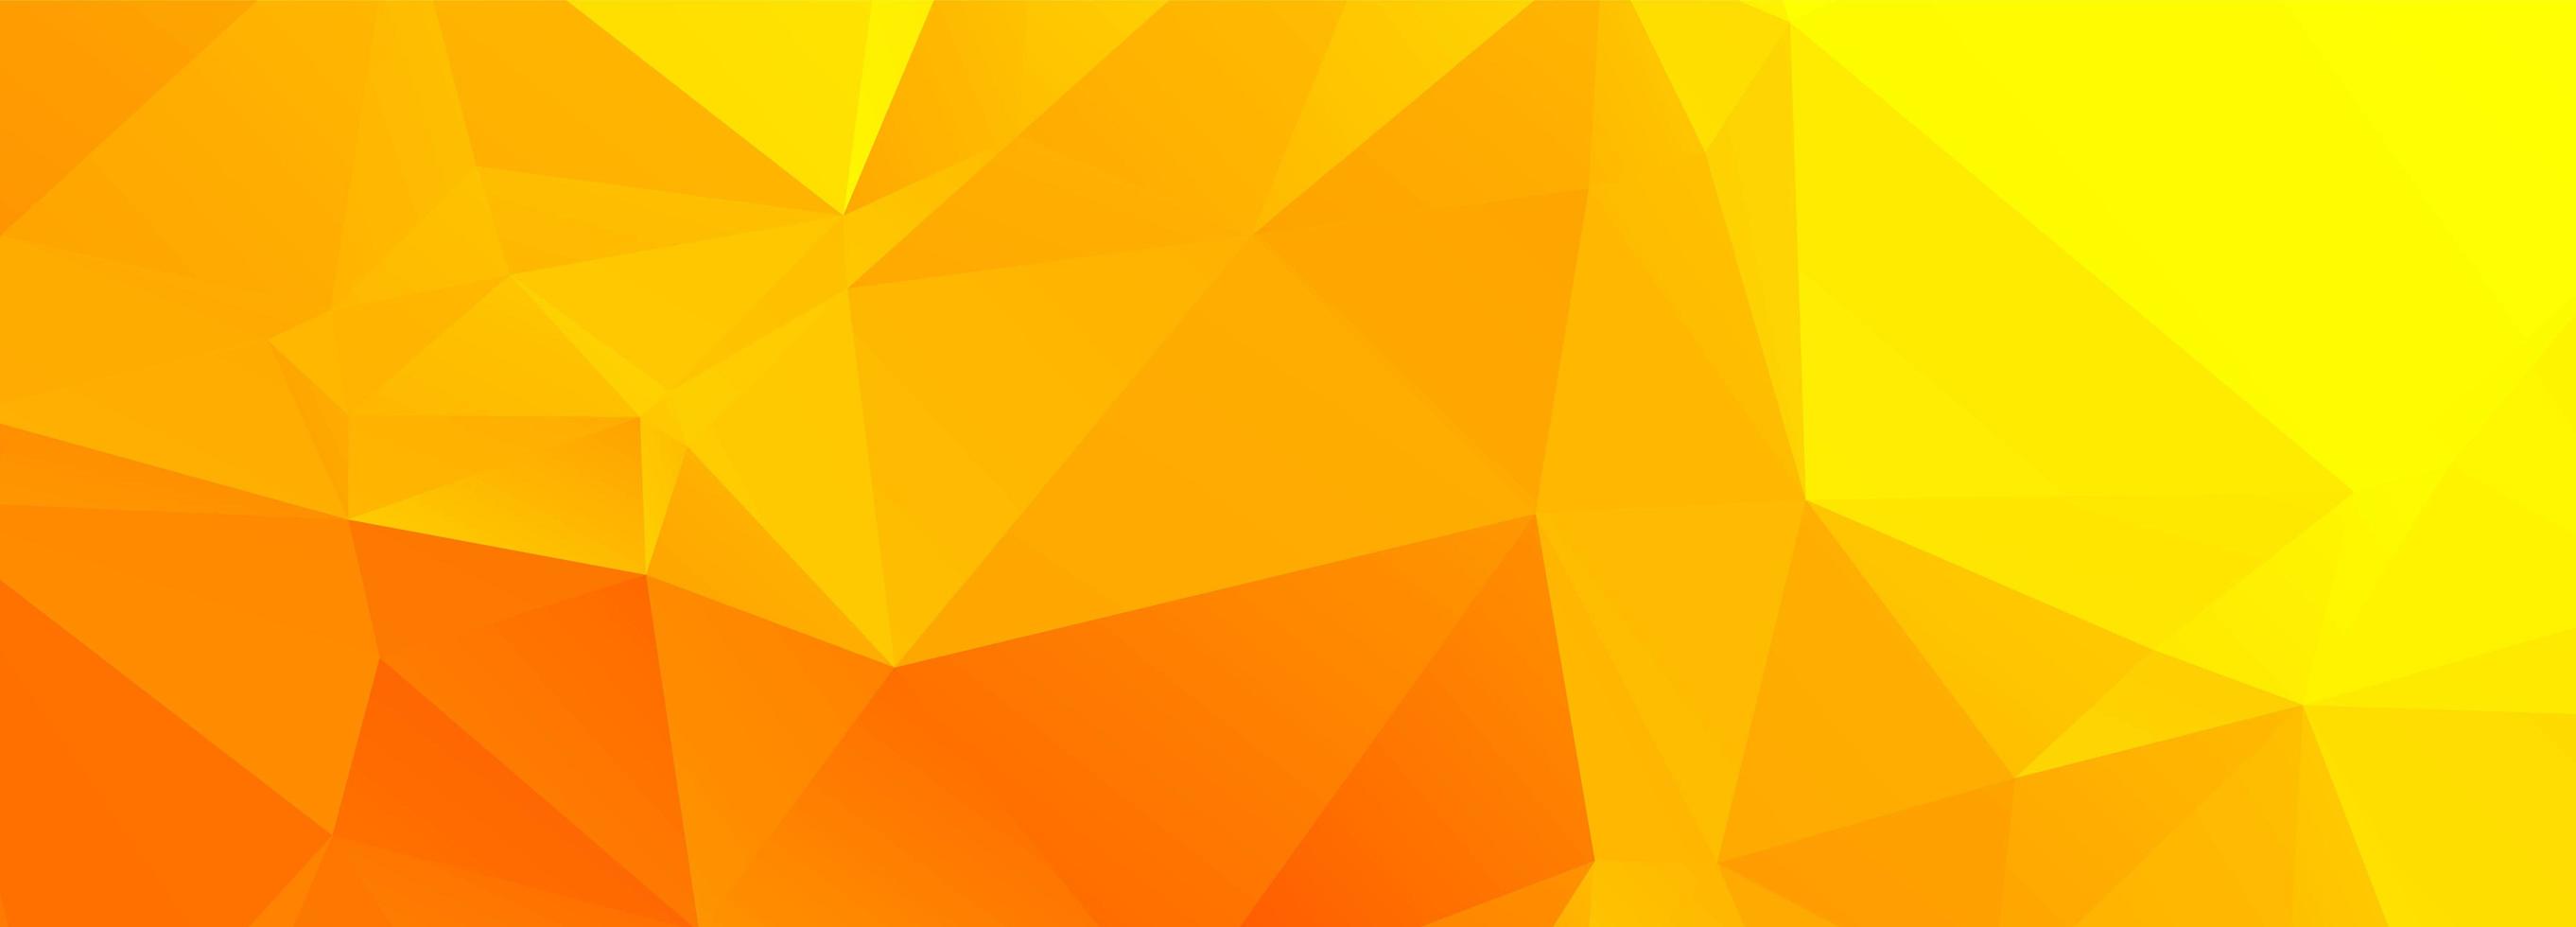 abstracte oranje en gele veelhoekbanner vector